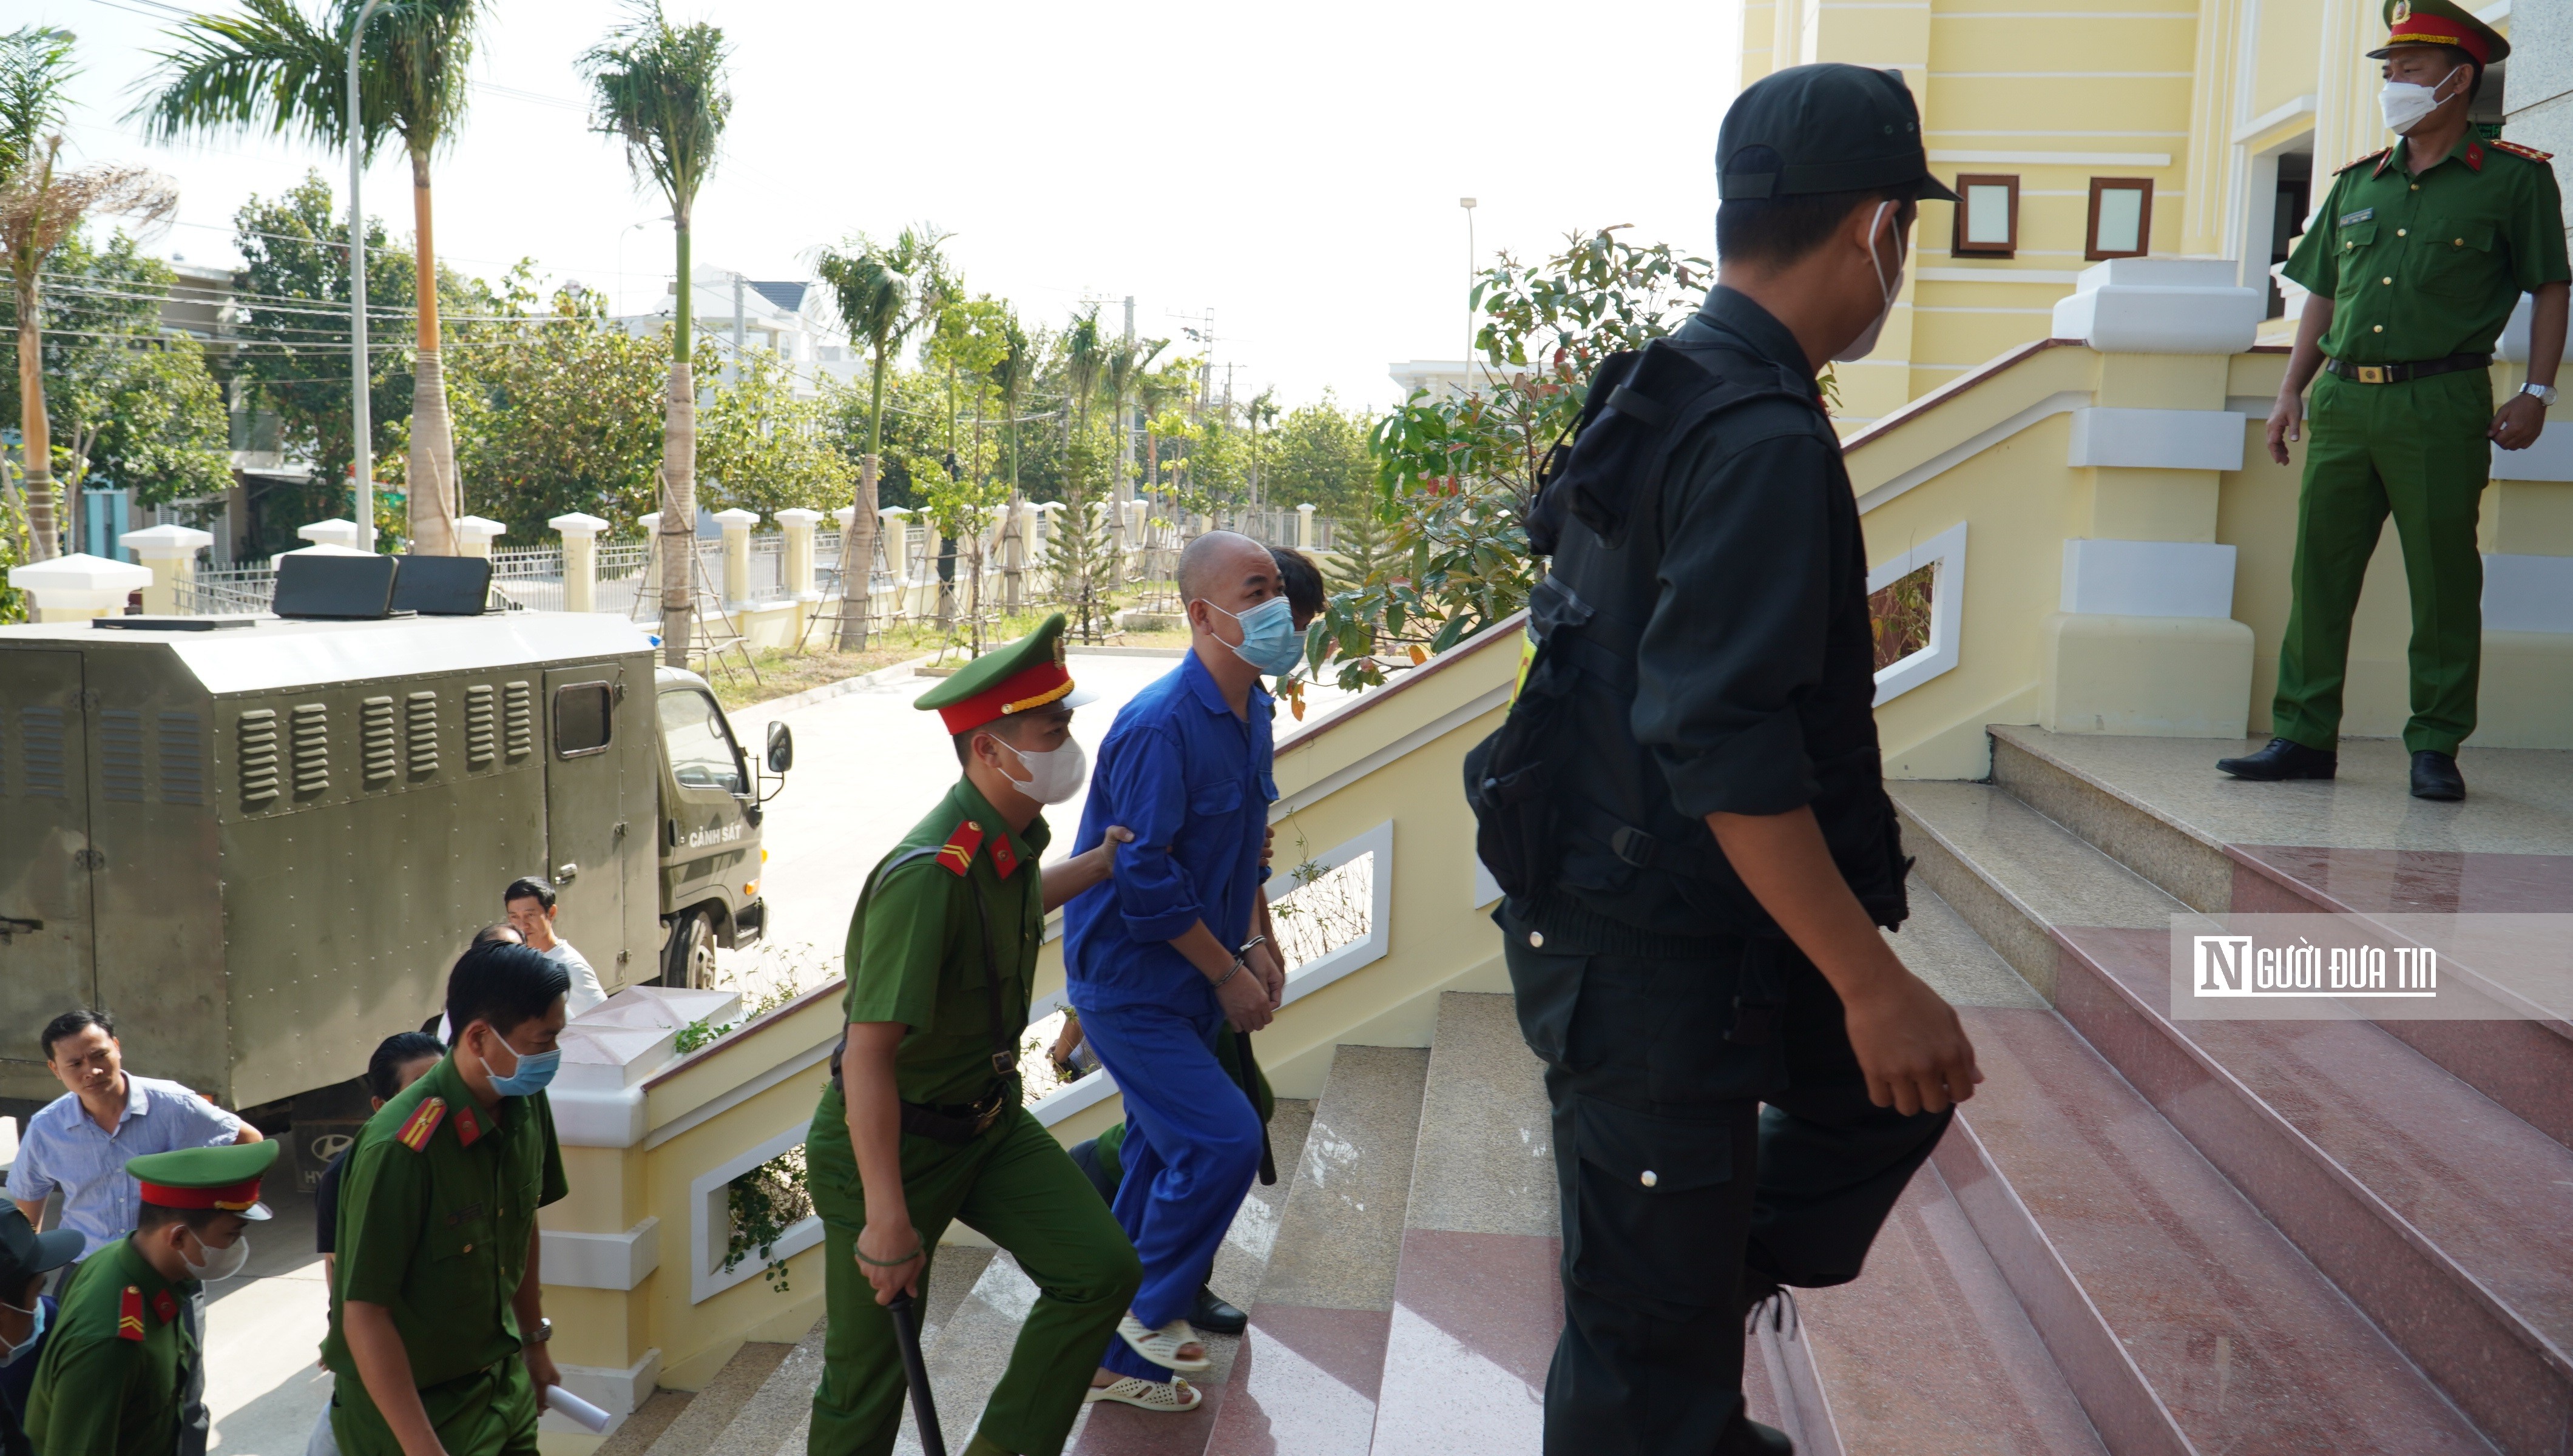 An ninh - Hình sự - Bình Thuận: Cận cảnh phiên toà xét xử lái xe tông chết người ở bờ kè